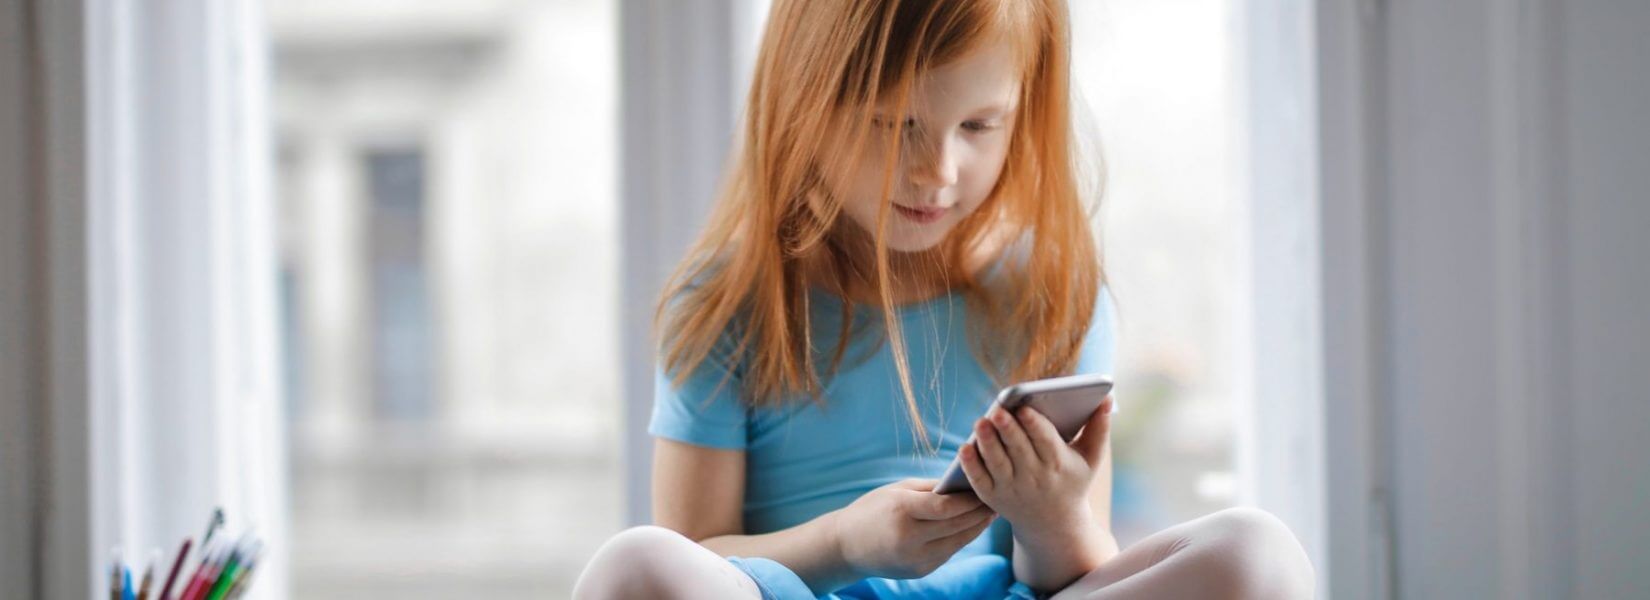 Ένα στα τρία παιδιά 5-7 ετών στη Βρετανία χρησιμοποιεί τα social media χωρίς επίβλεψη